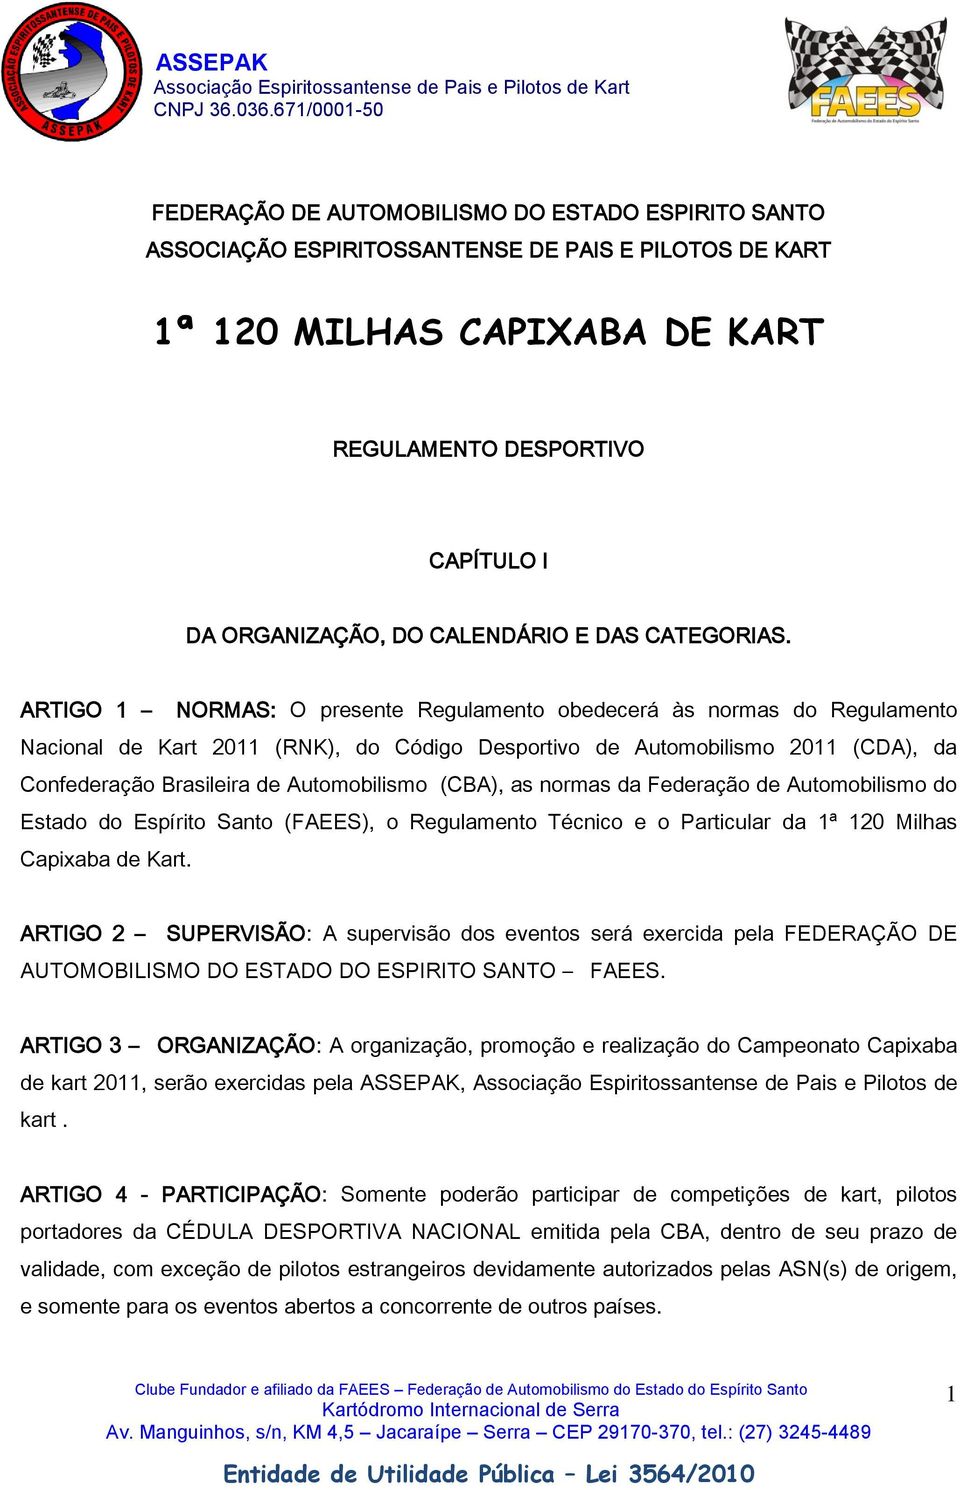 ARTIGO 1 NORMAS: O presente Regulamento obedecerá às normas do Regulamento Nacional de Kart 2011 (RNK), do Código Desportivo de Automobilismo 2011 (CDA), da Confederação Brasileira de Automobilismo